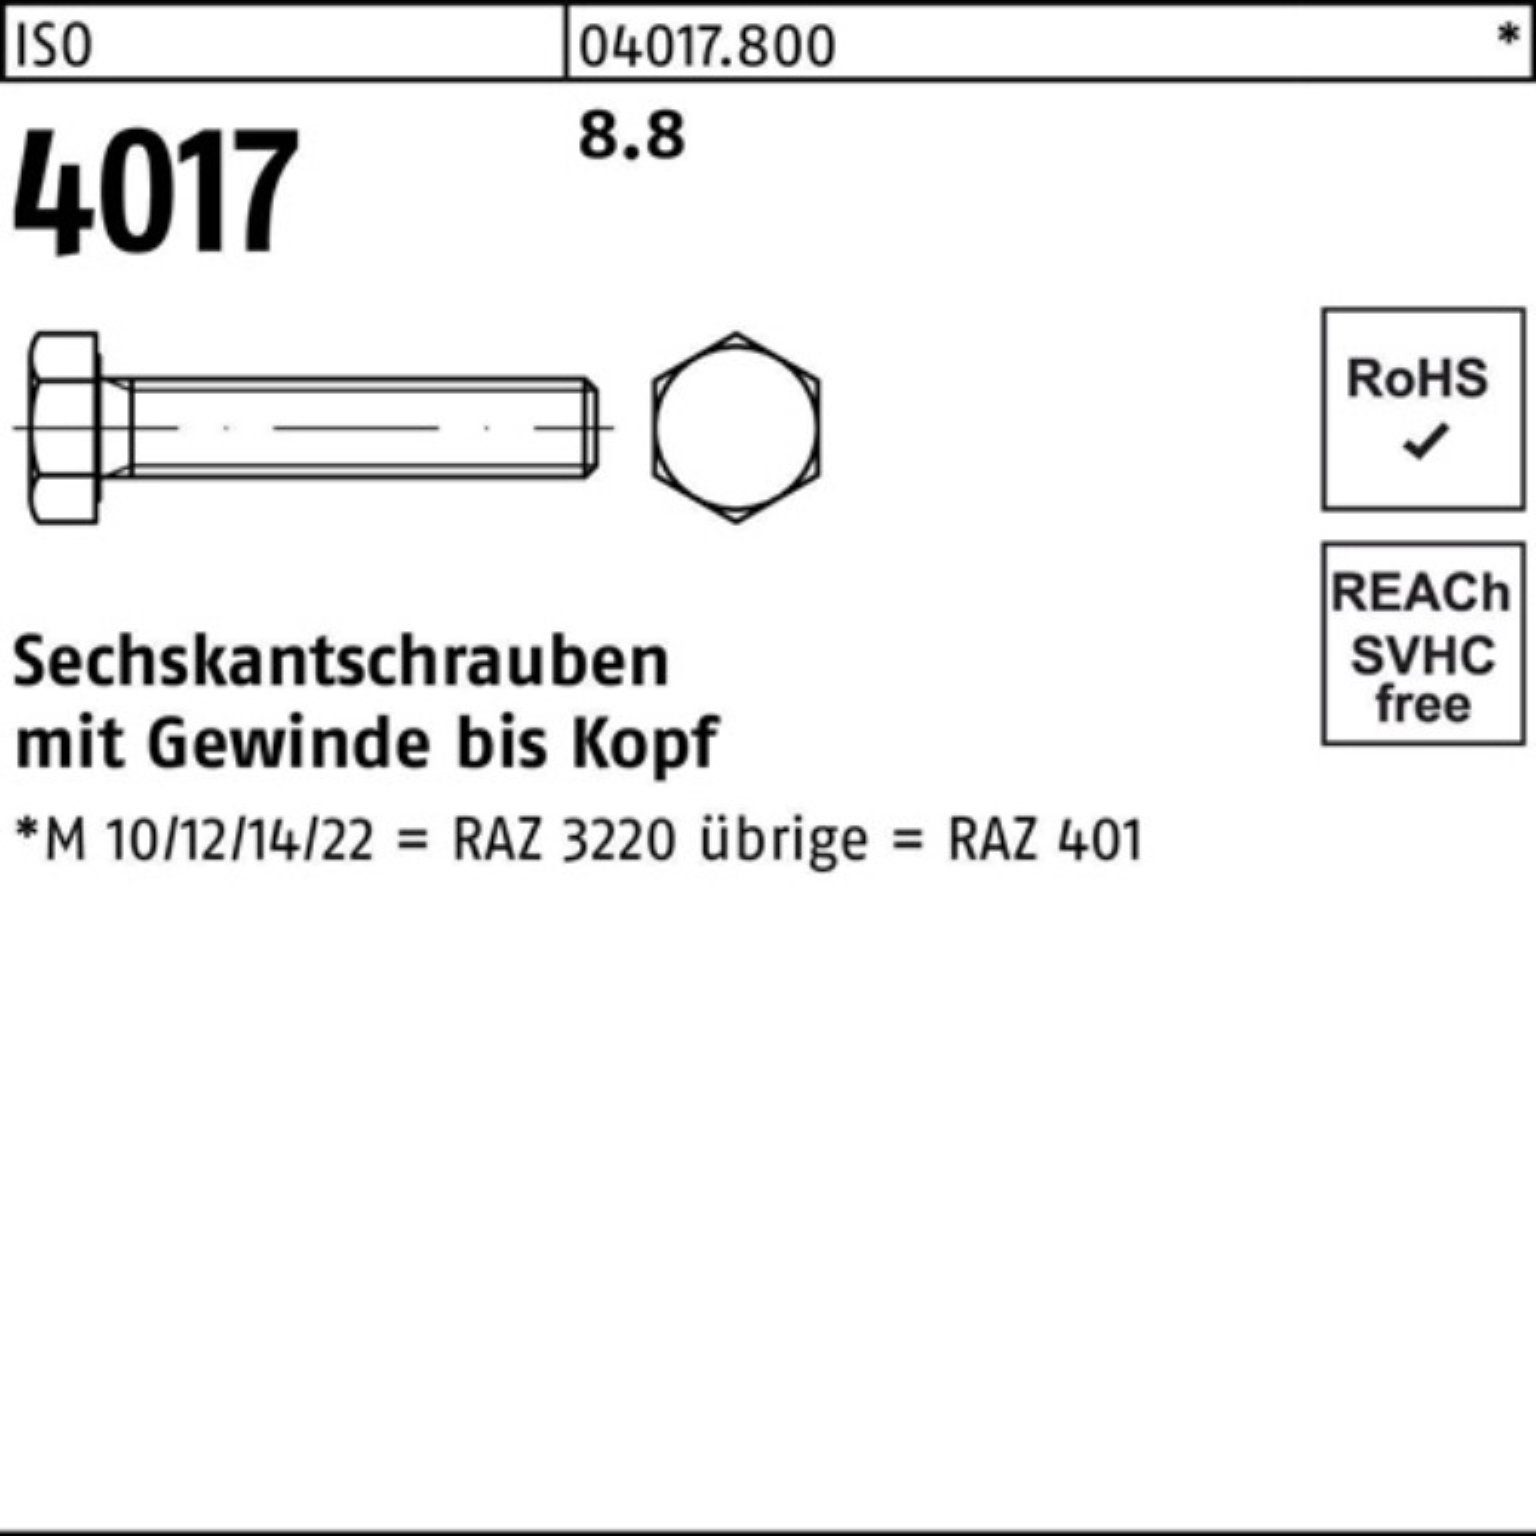 Bufab Sechskantschraube 100er 4017 M4x 10 ISO 401 Sechskantschraube 100 Pack 8.8 VG ISO Stück